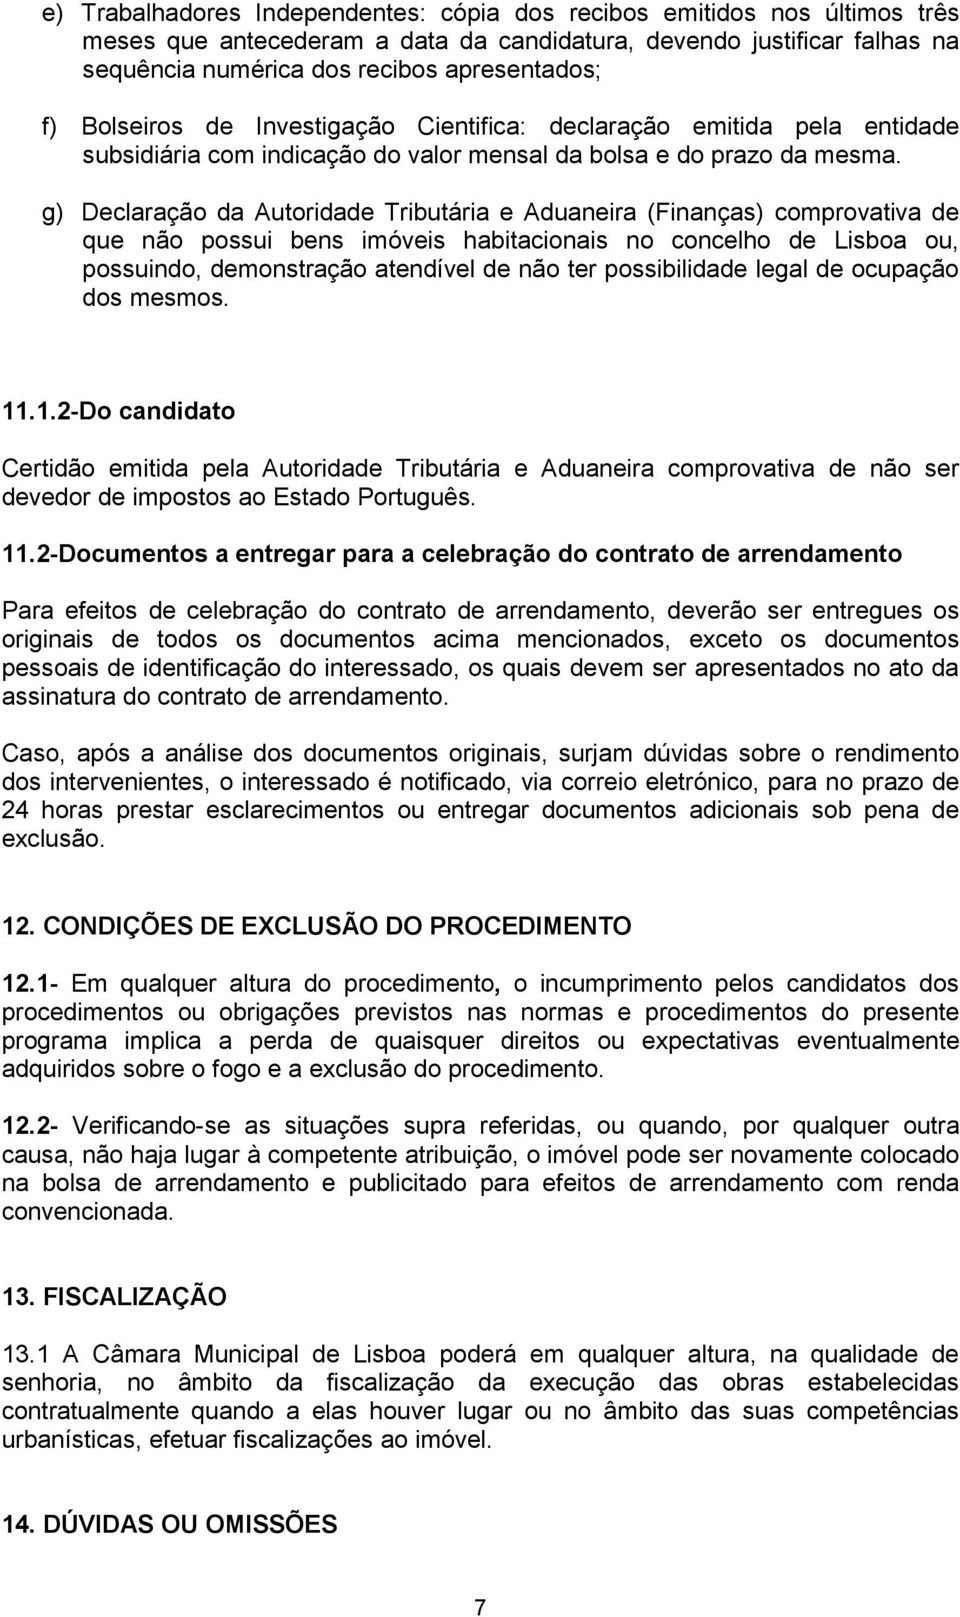 g) Declaração da Autoridade Tributária e Aduaneira (Finanças) comprovativa de que não possui bens imóveis habitacionais no concelho de Lisboa ou, possuindo, demonstração atendível de não ter